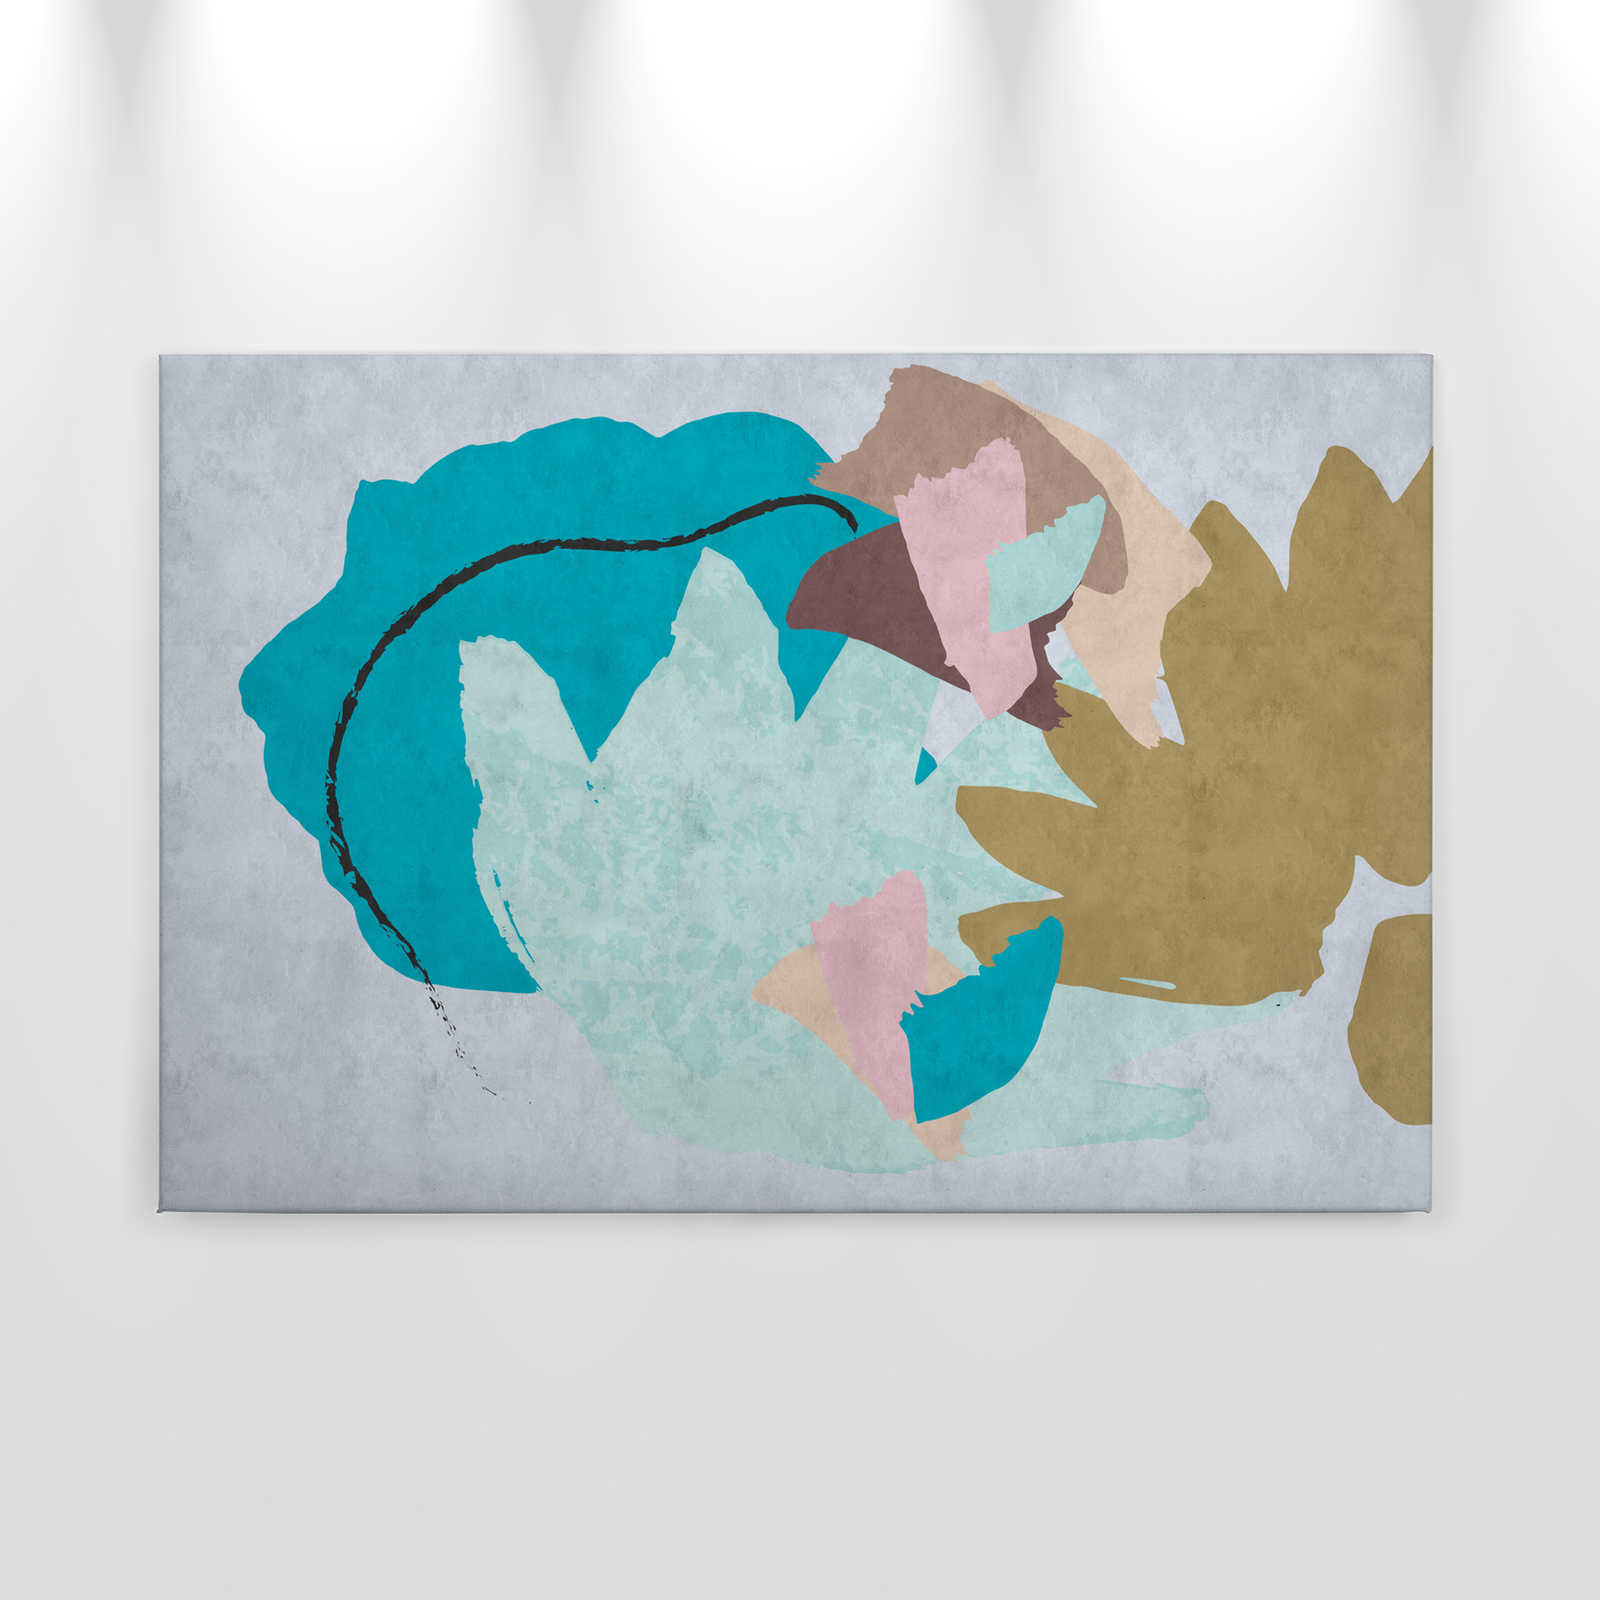             Floral Collage 1 - Tableau abstrait, art coloré - À structure de papier buvard - 0,90 m x 0,60 m
        